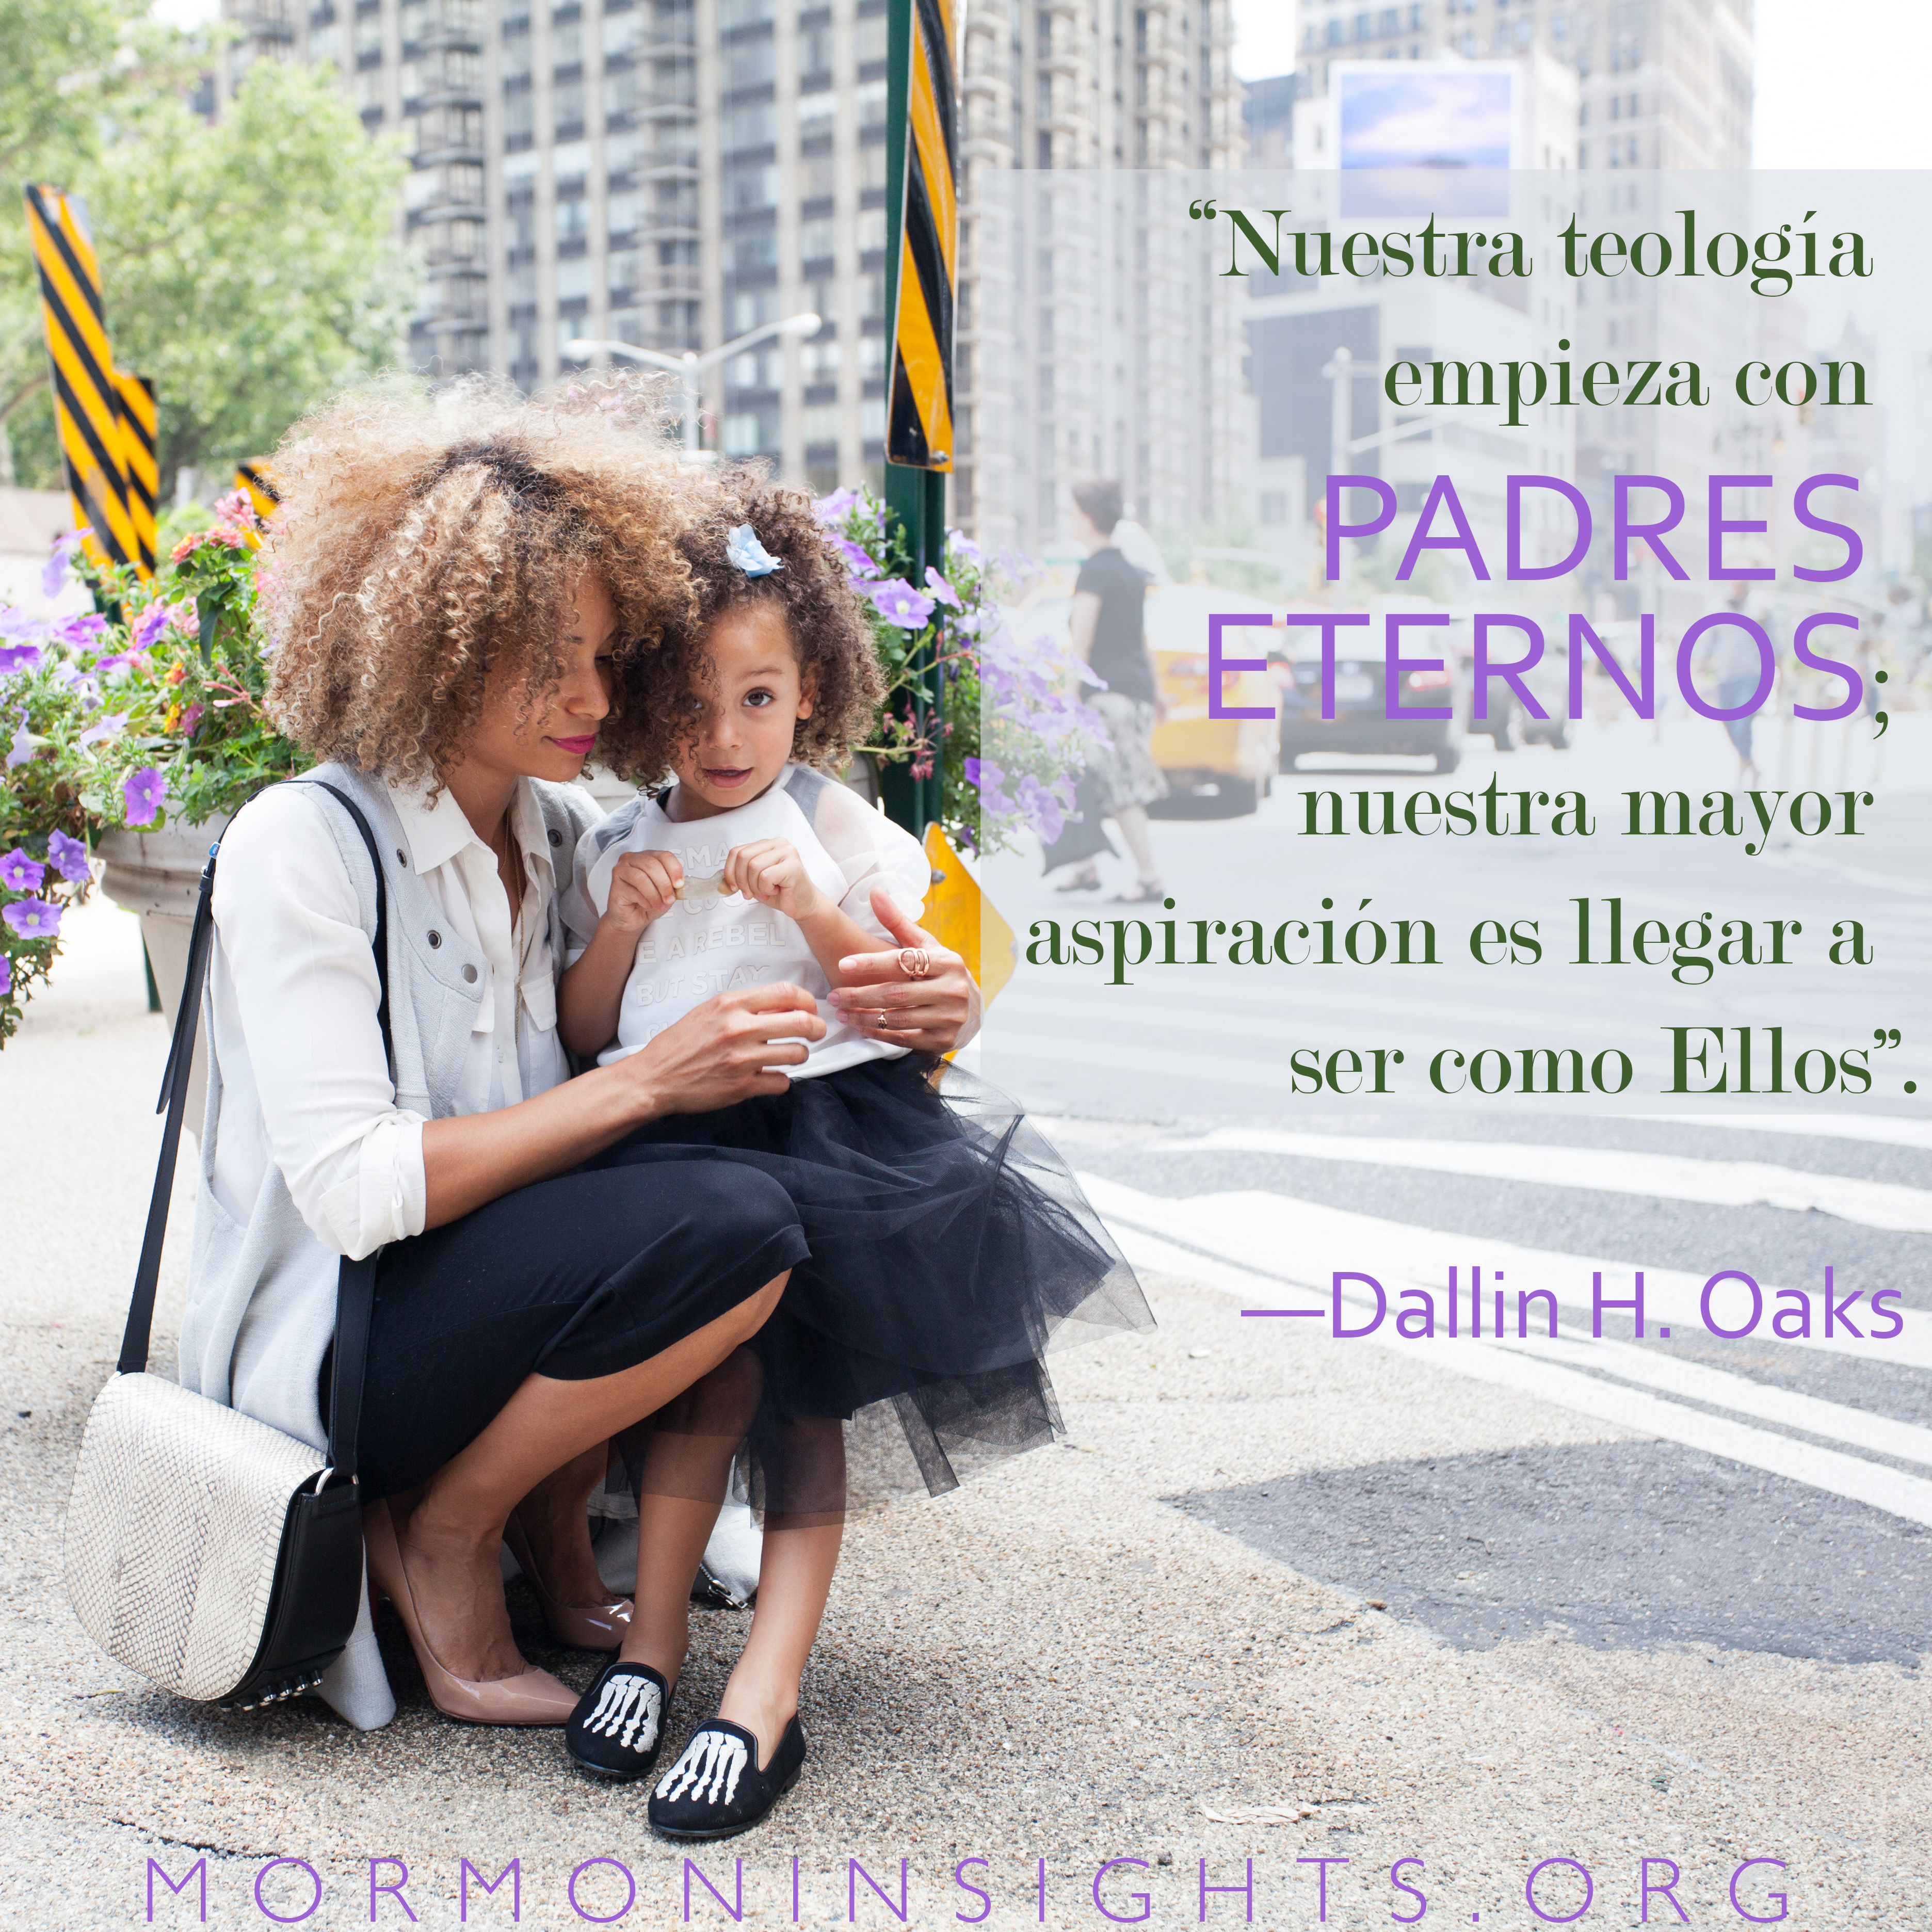 """Nuestra teología empieza con padres eternos; nuestra mayor aspiración es llegar a ser como Ellos”. —Dallin H. Oaks"